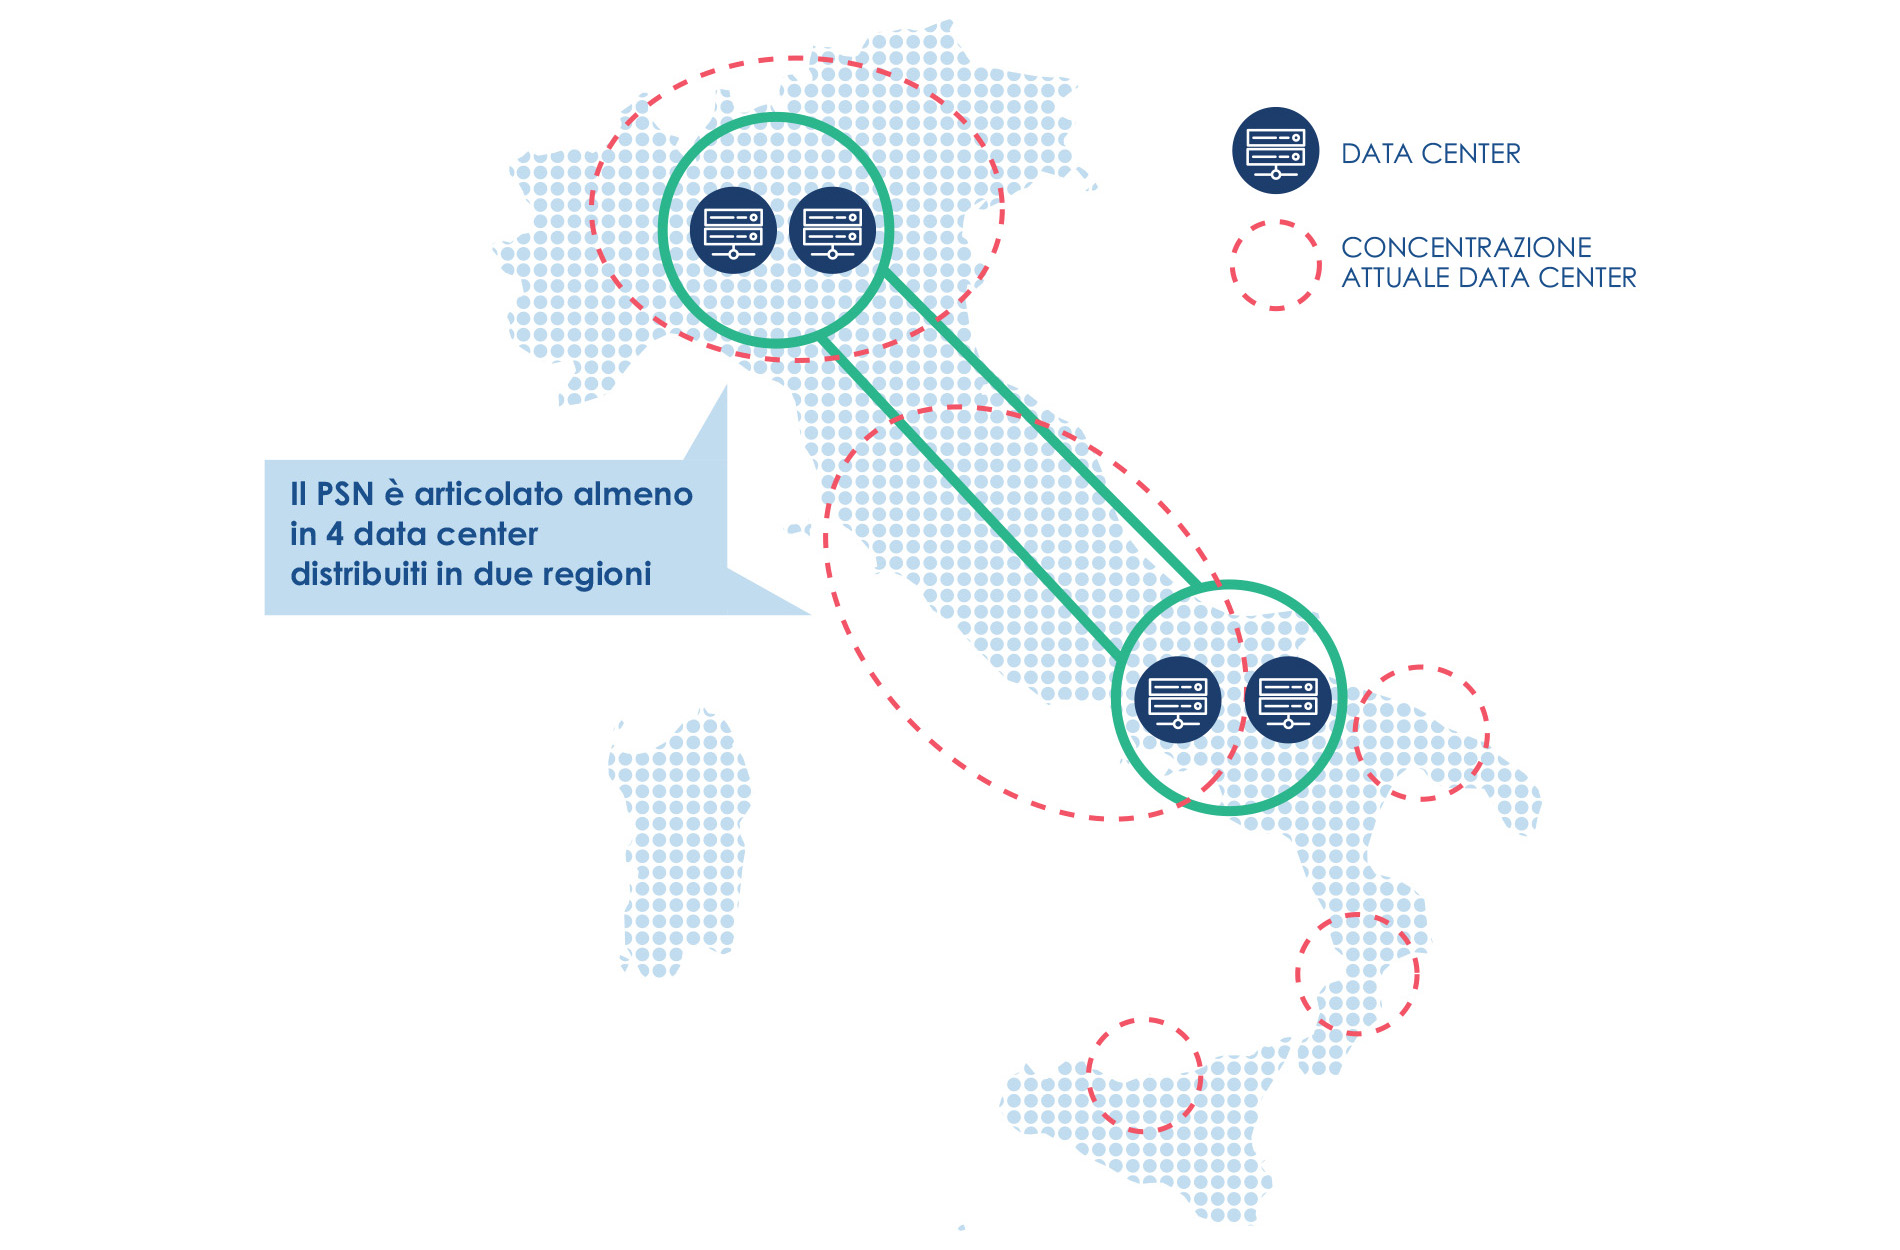 Immagine che mostra la mappa dell'Italia con la distribuzione dei data center previsti.